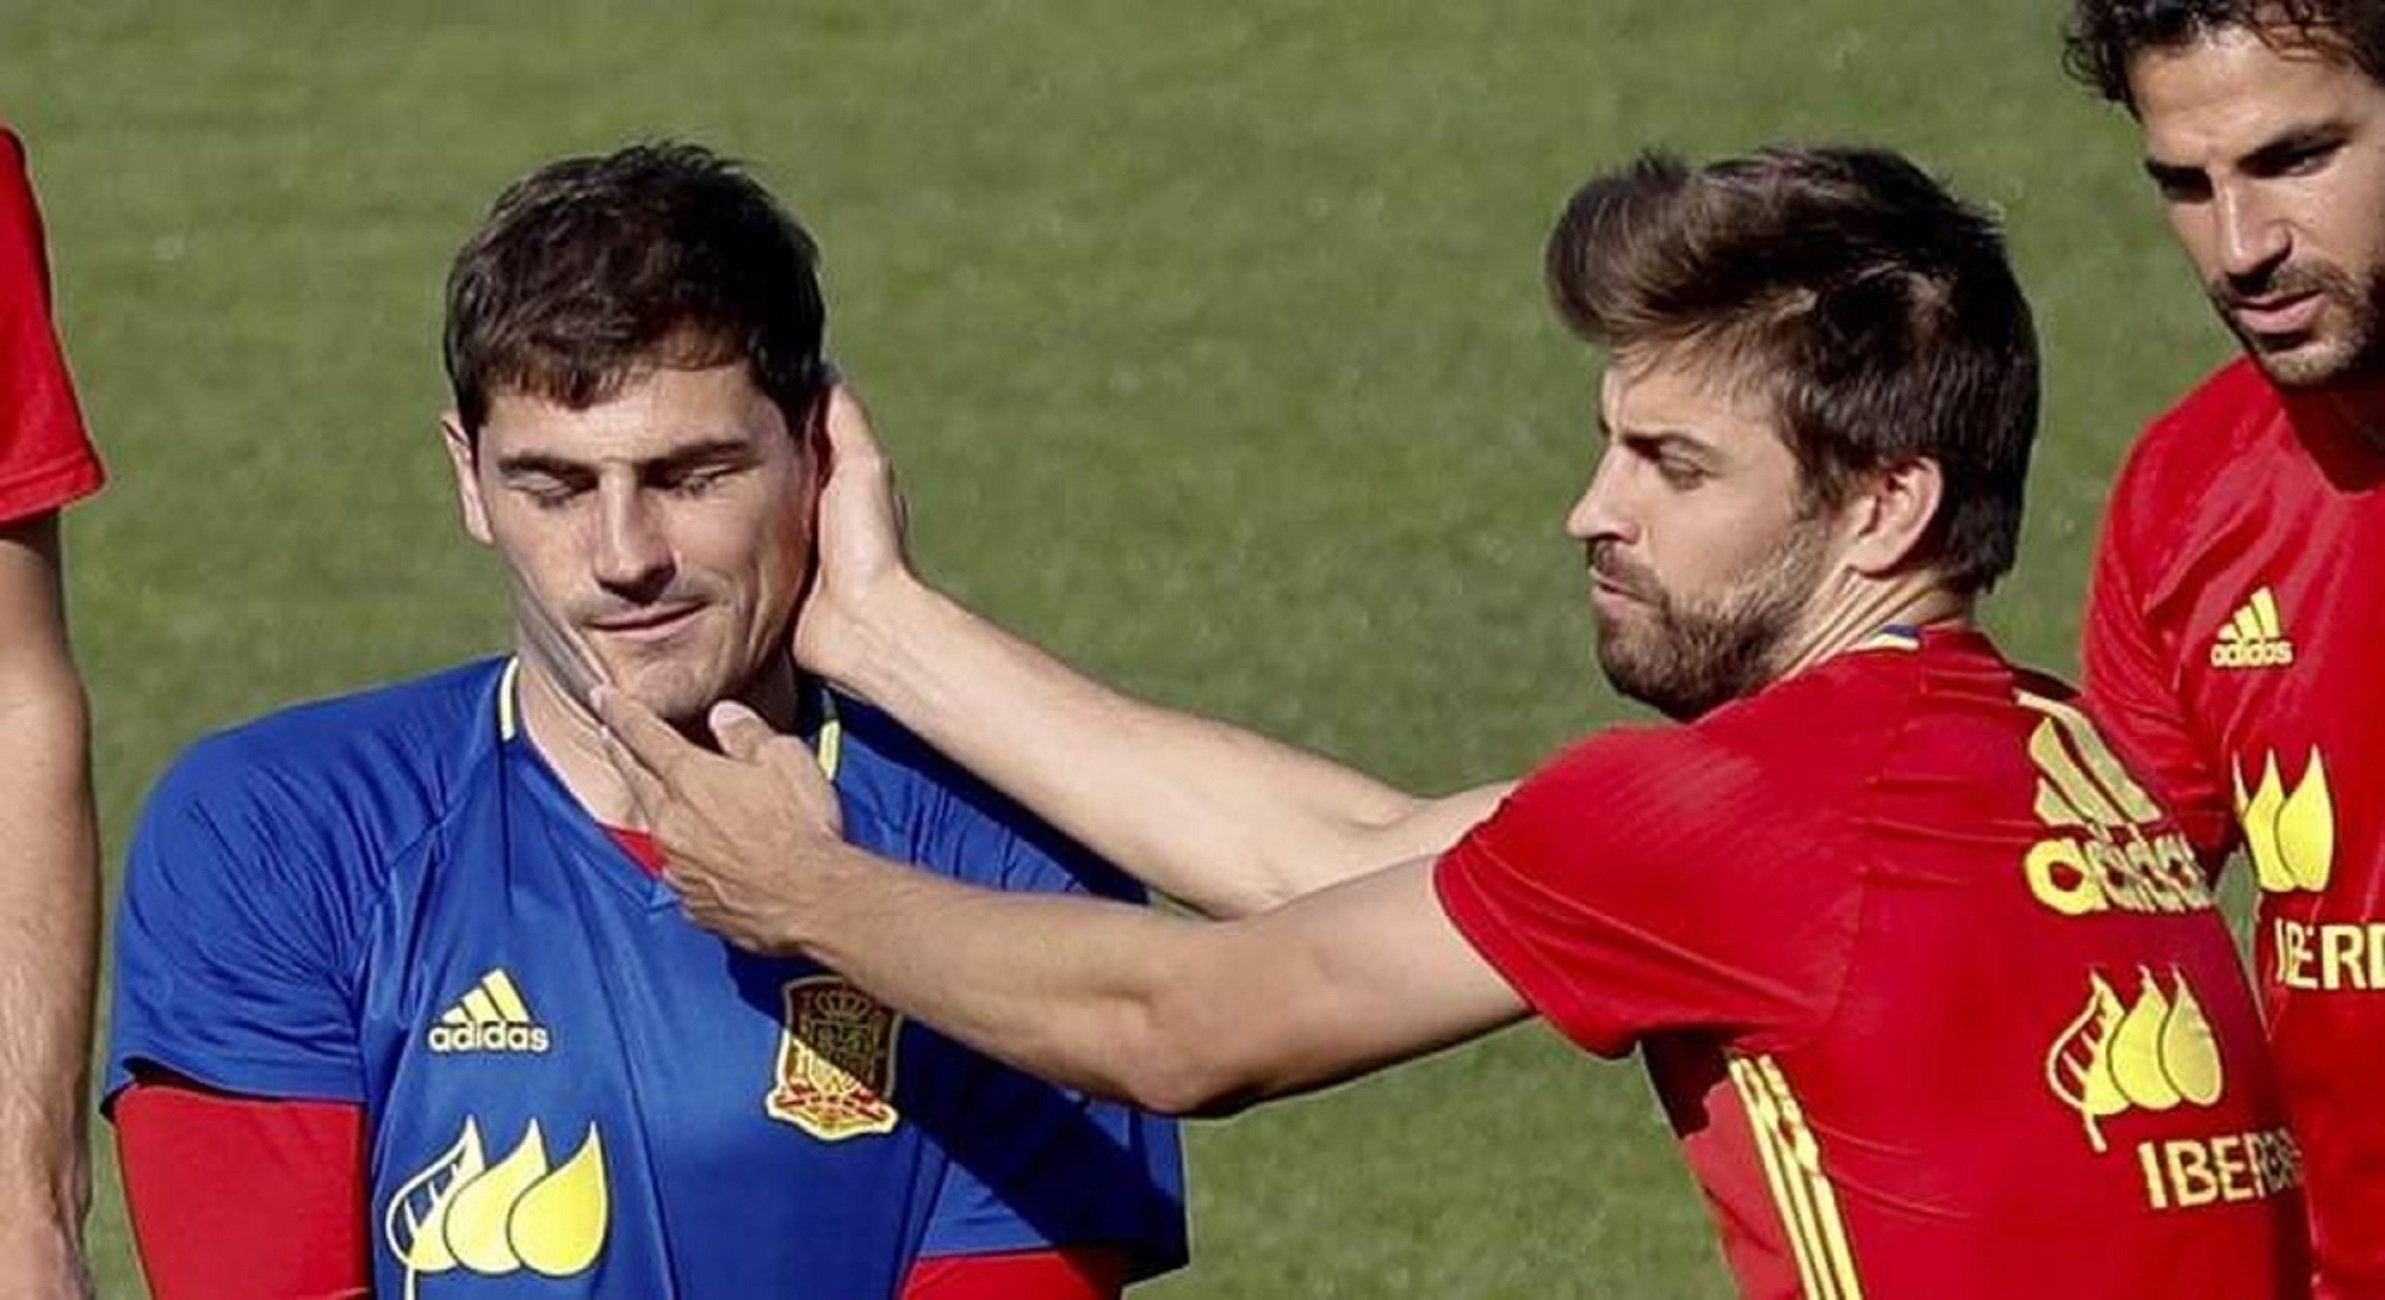 Espectacular troleo de Piqué a Casillas por el tema de los audios de Florentino